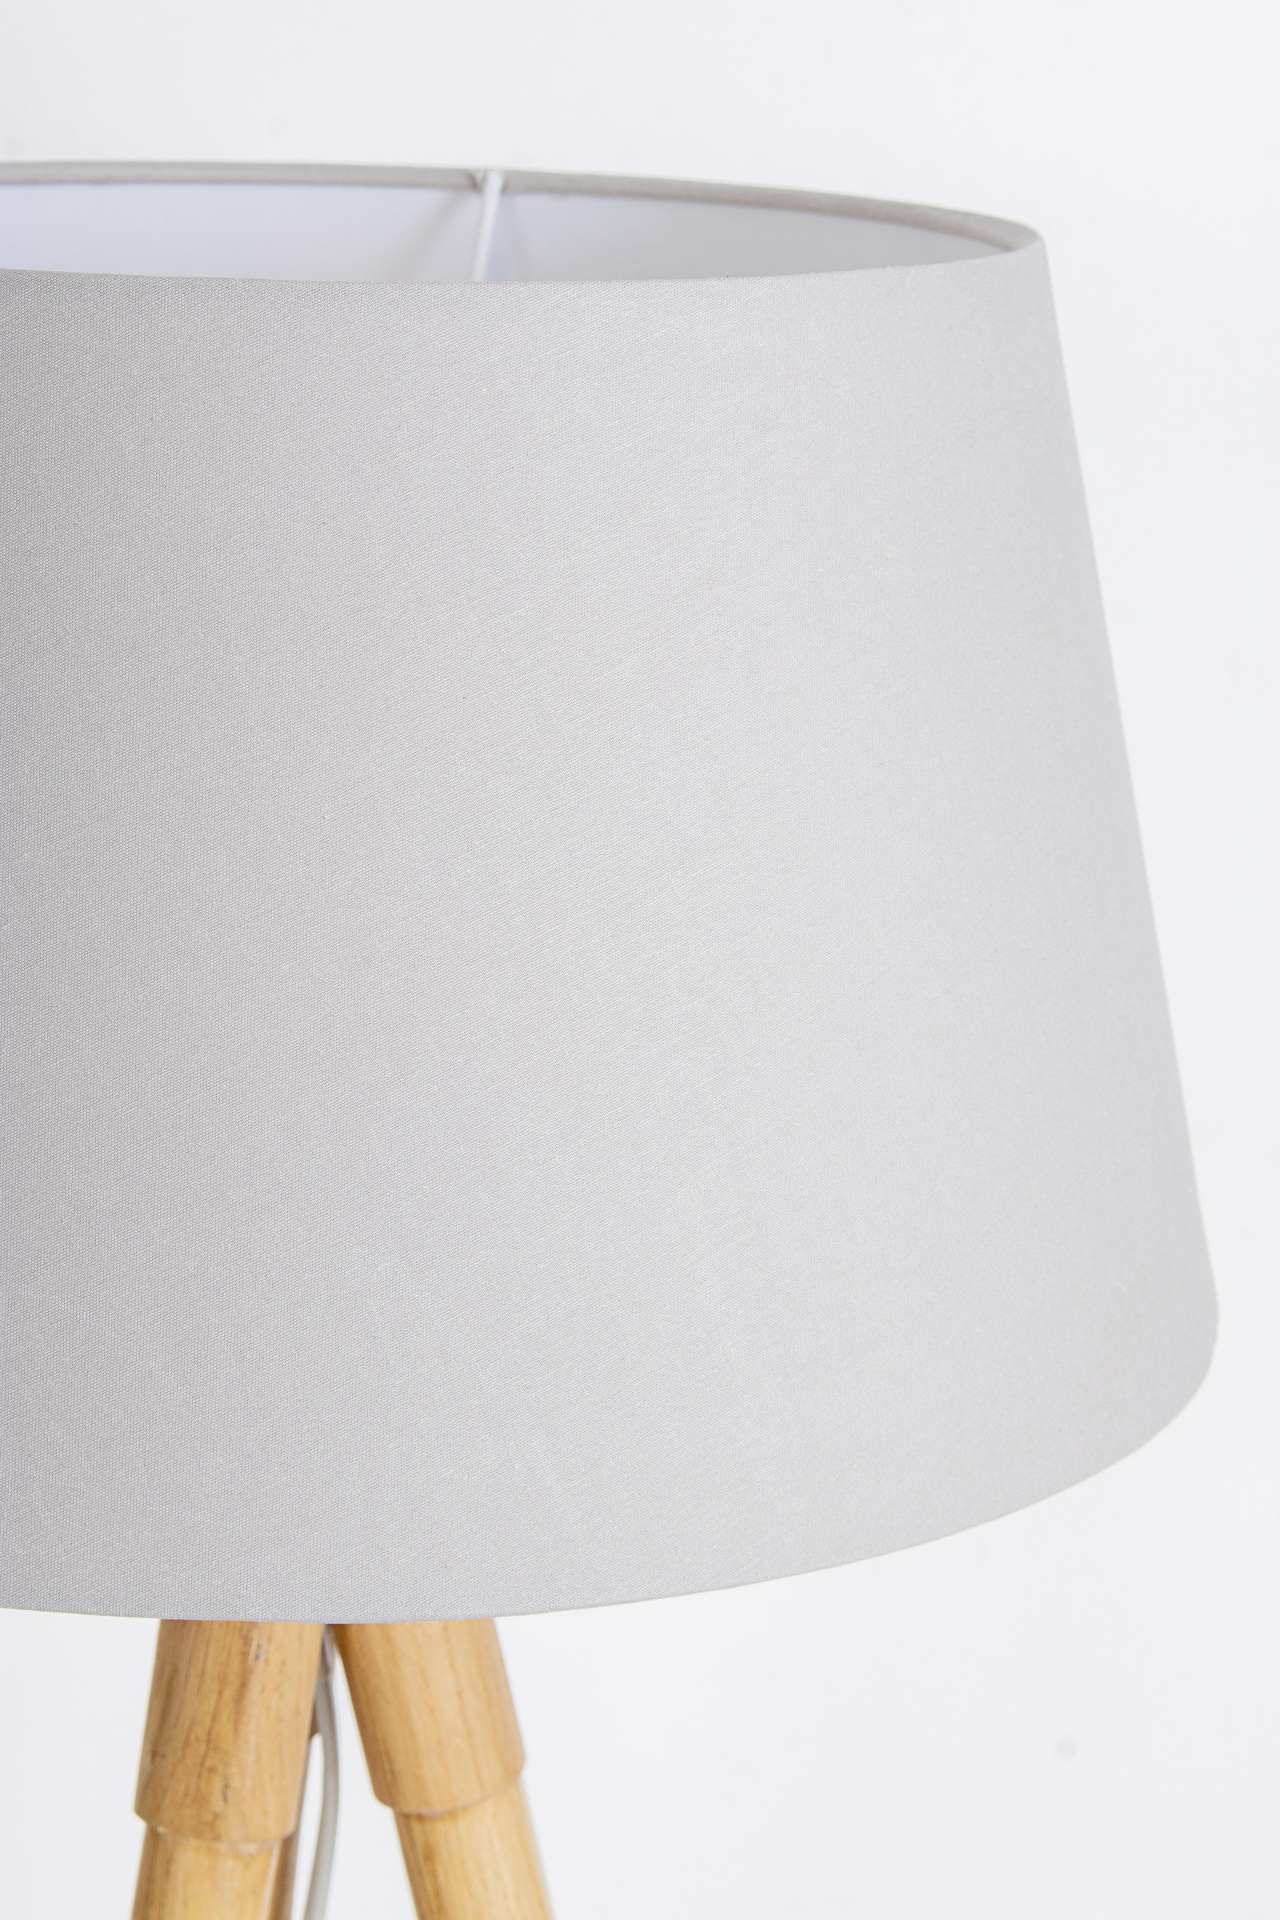 Die Tischleuchte Wallas überzeugt mit ihrem klassischen Design. Gefertigt wurde sie aus Tannenholz, welches einen grauen Farbton besitzt. Der Lampenschirm ist aus Terital und hat eine weiße Farbe. Die Lampe besitzt eine Höhe von 69 cm.